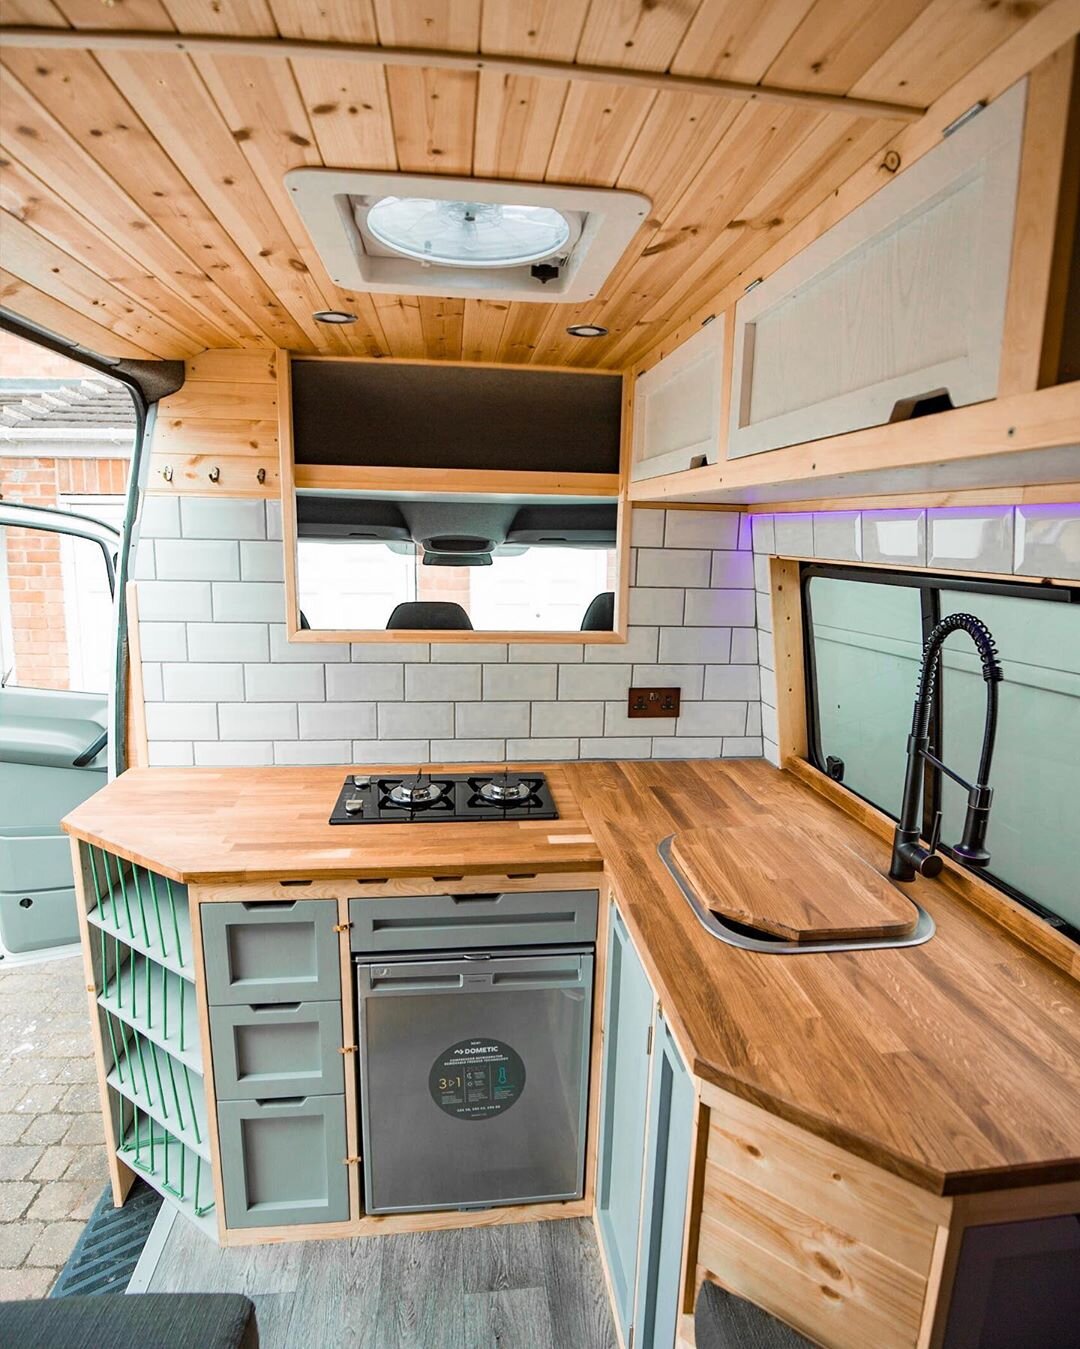 L-Shaped Campervan Kitchen | Image by: @carpenteringram